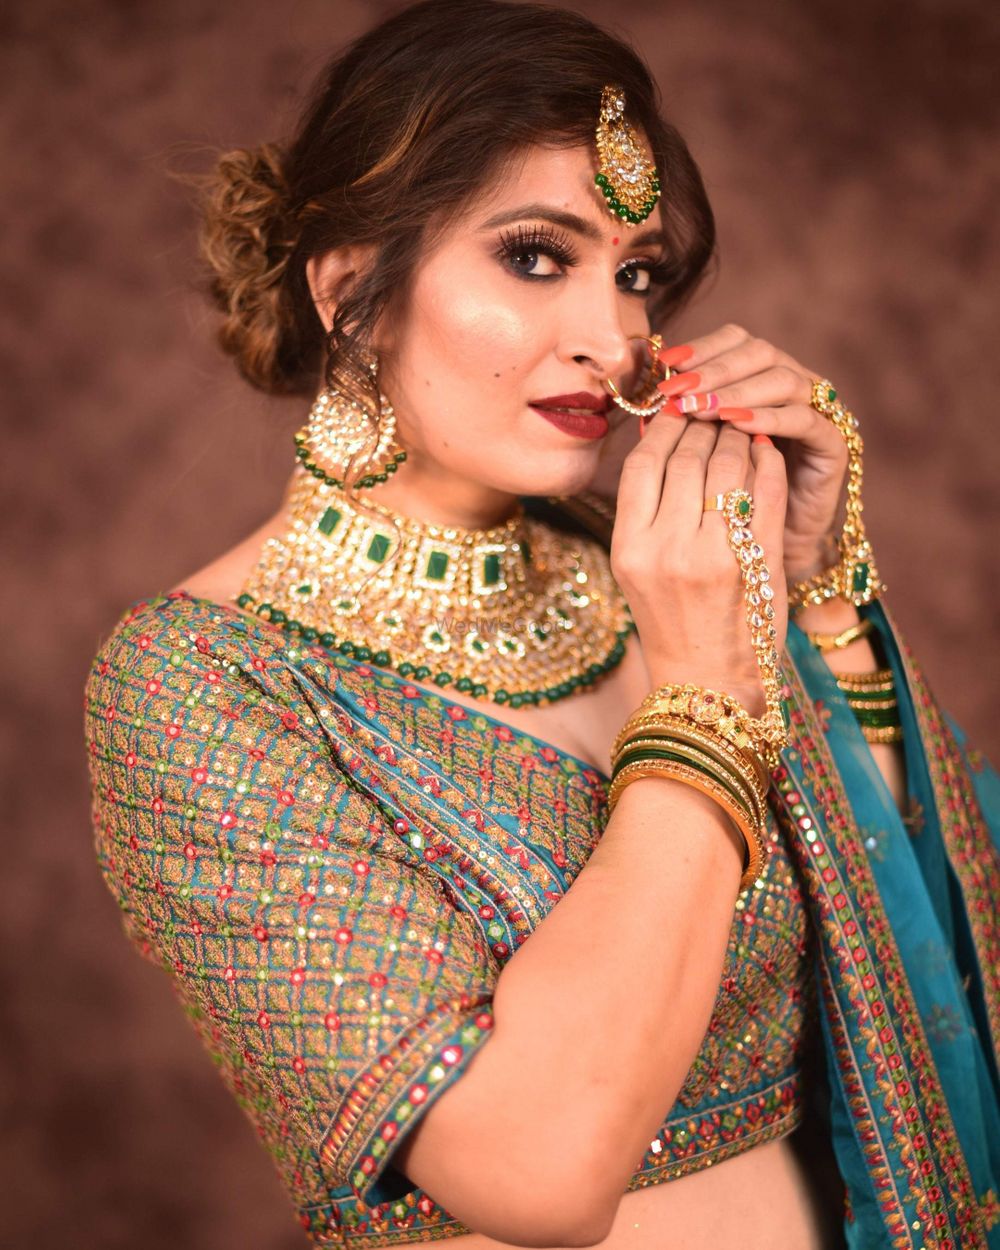 Photo From Mrs. Delhi Shikha Sachdeva ✨ - By Hair & Makeup by Vaishnavi